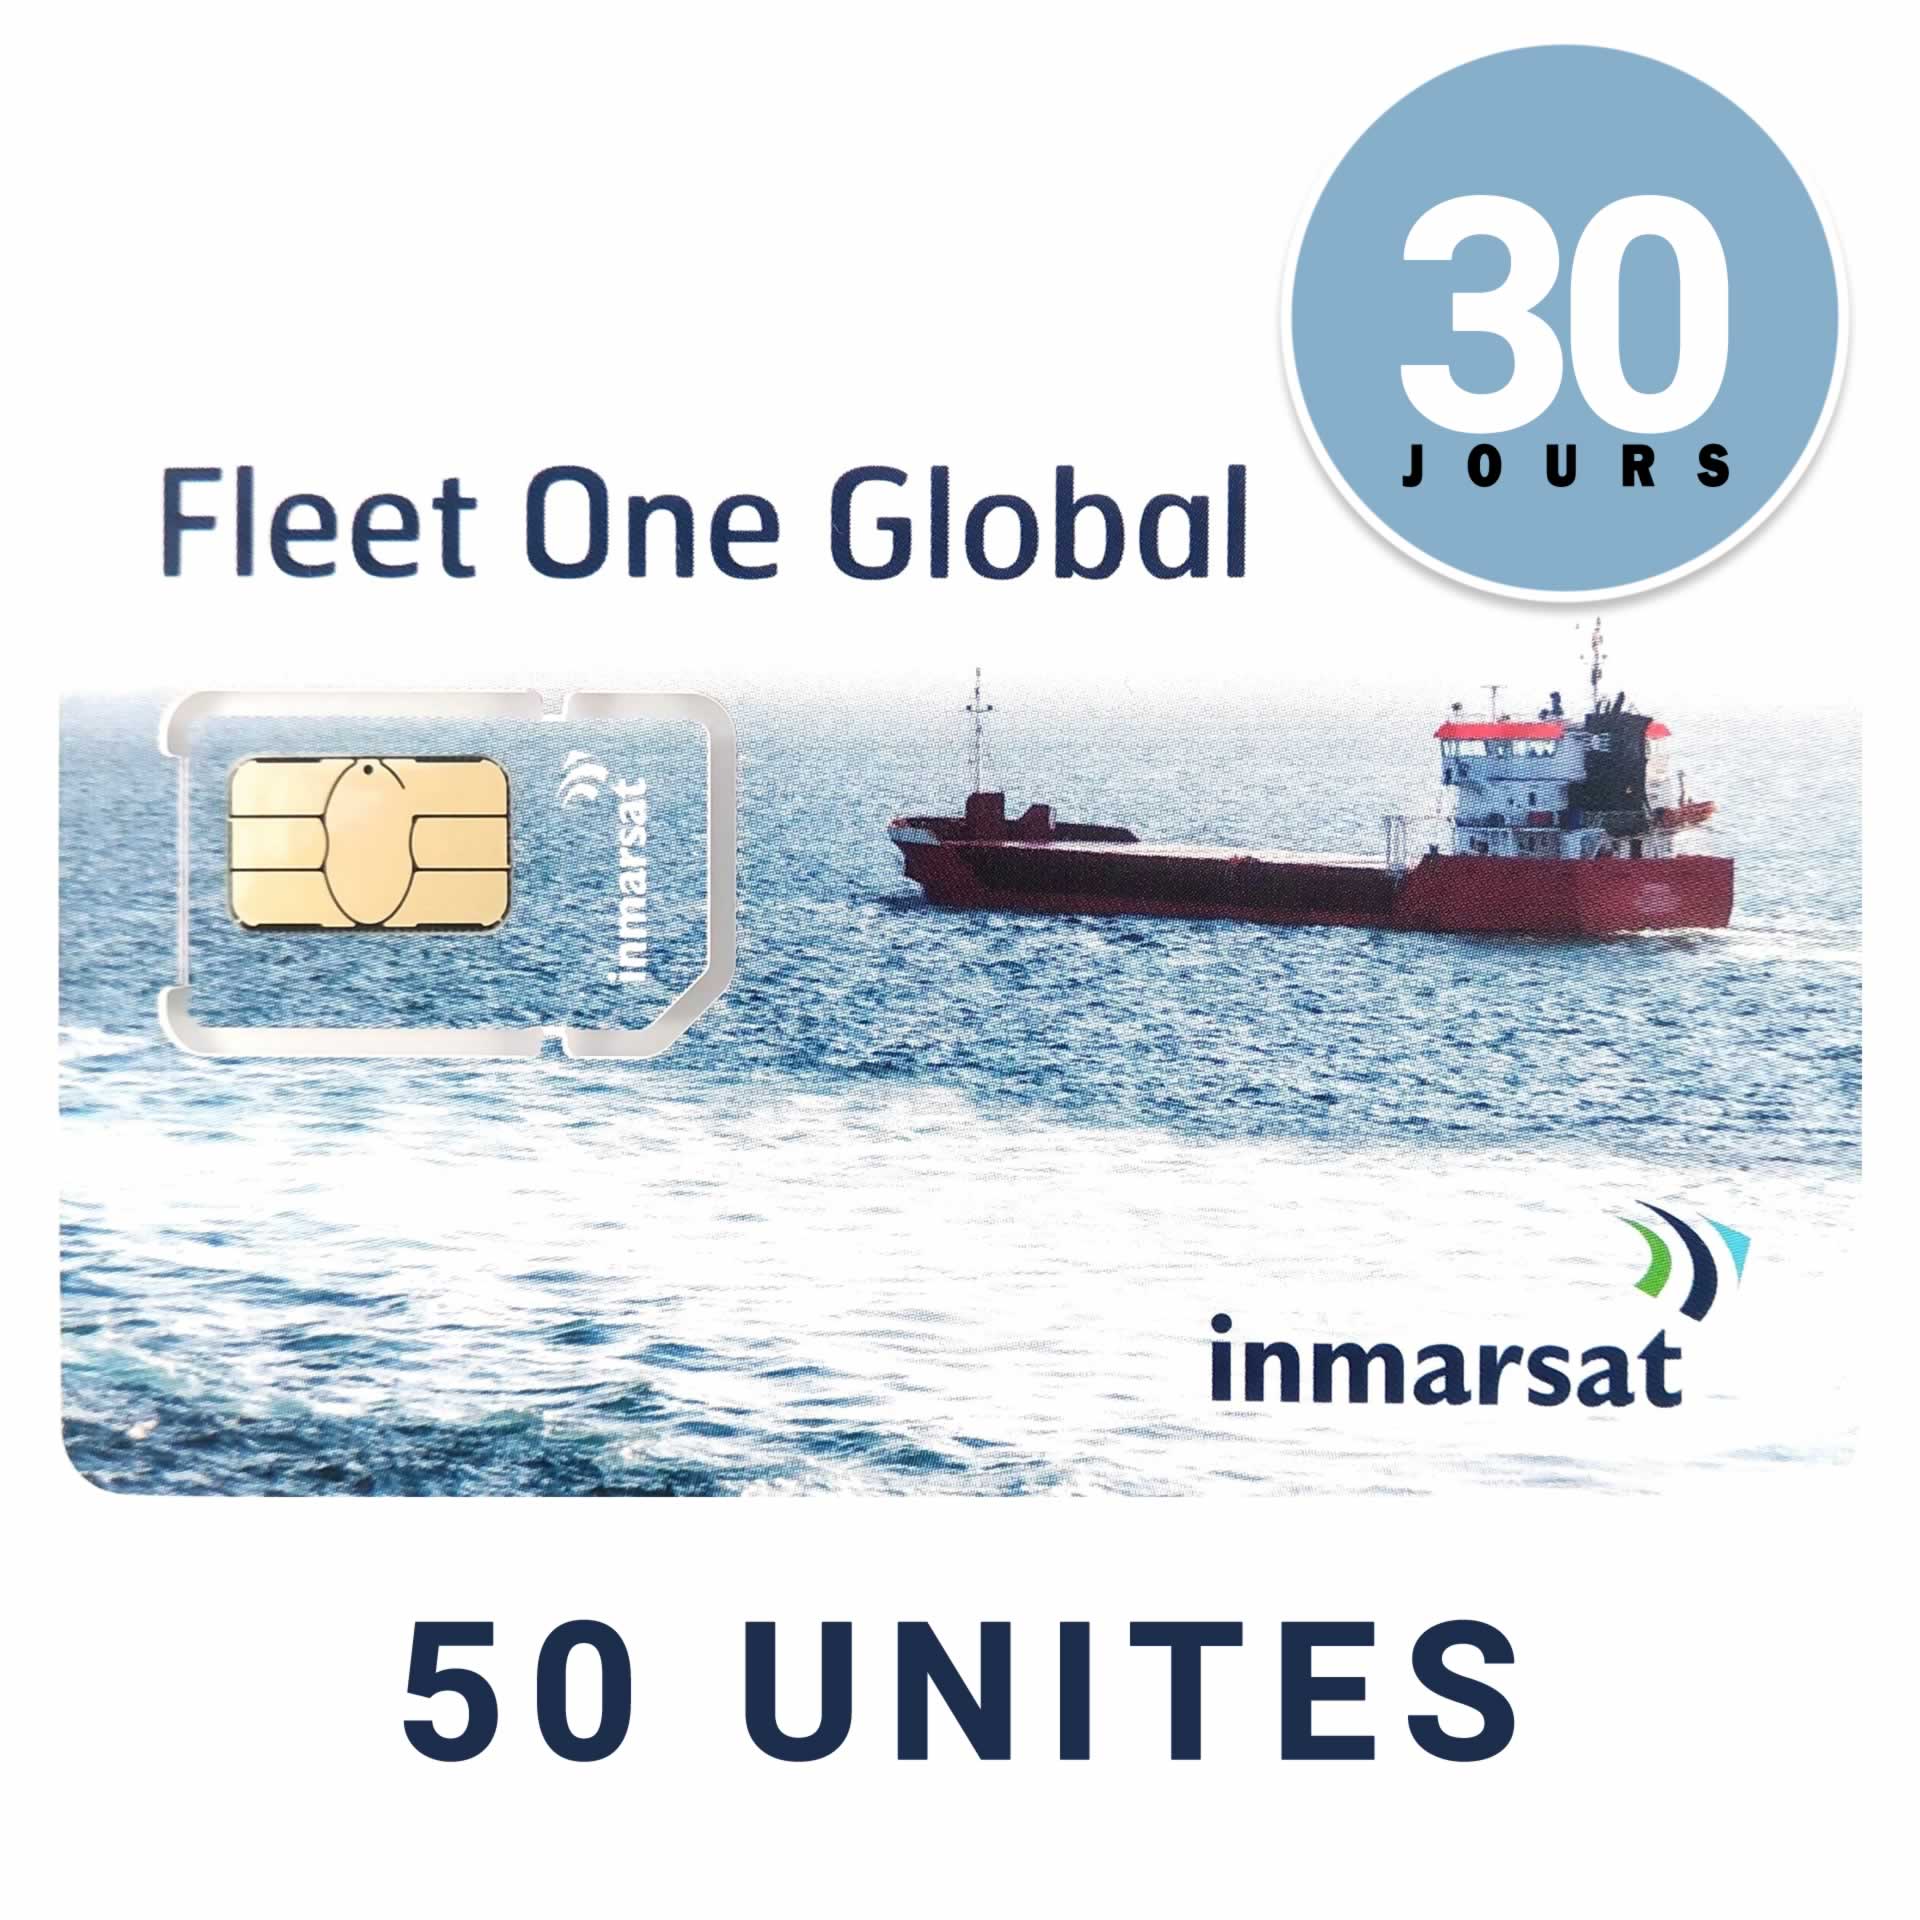 INMARSAT GLOBAL FLEET ONE Prepaid Reloadable Card - 50 UNITS - 30 DAYS